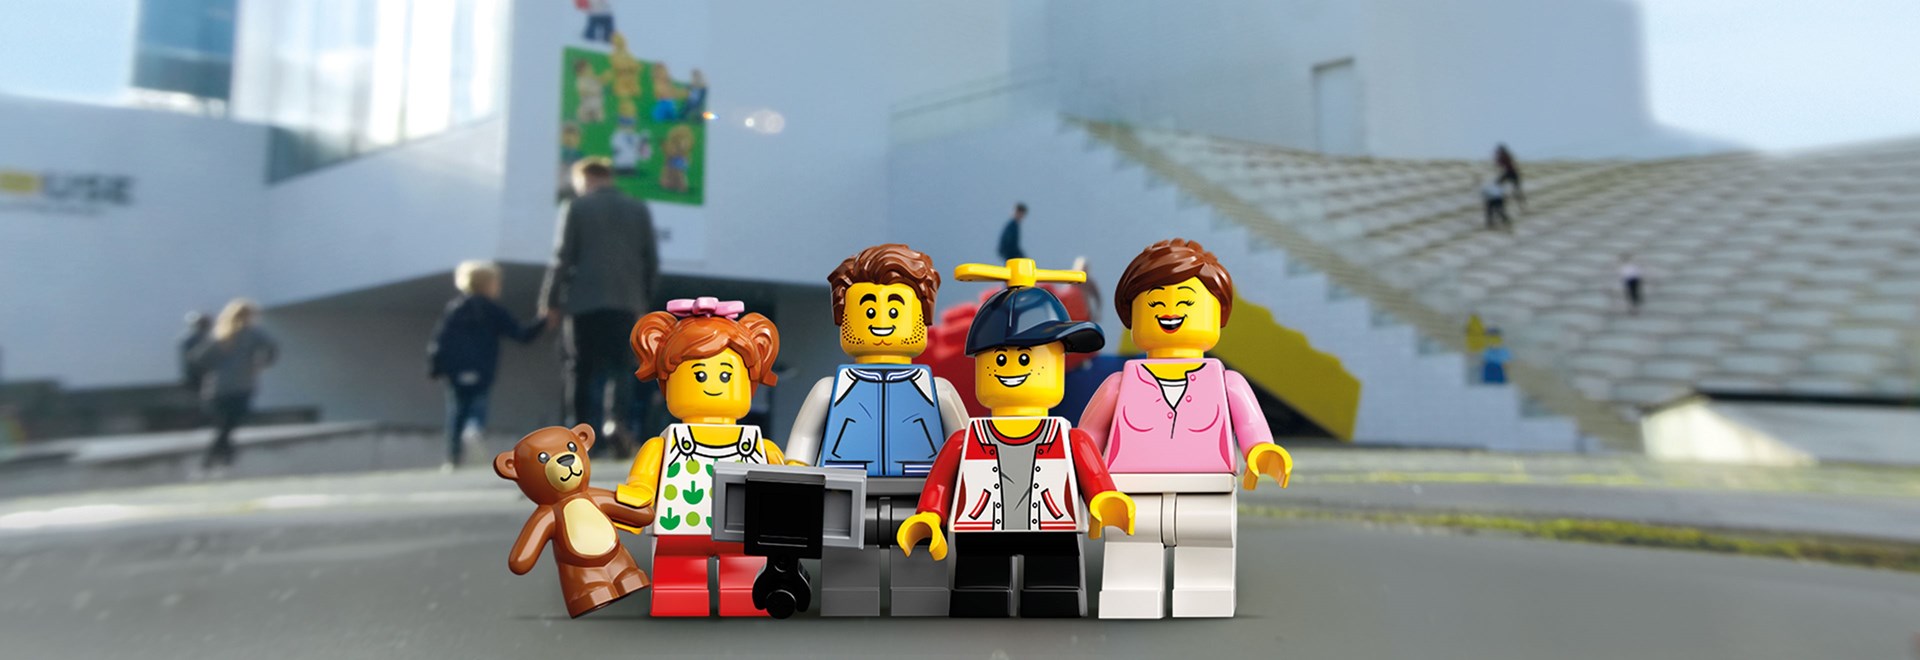 Køb årskort til LEGO House og kom igen så tit du vil